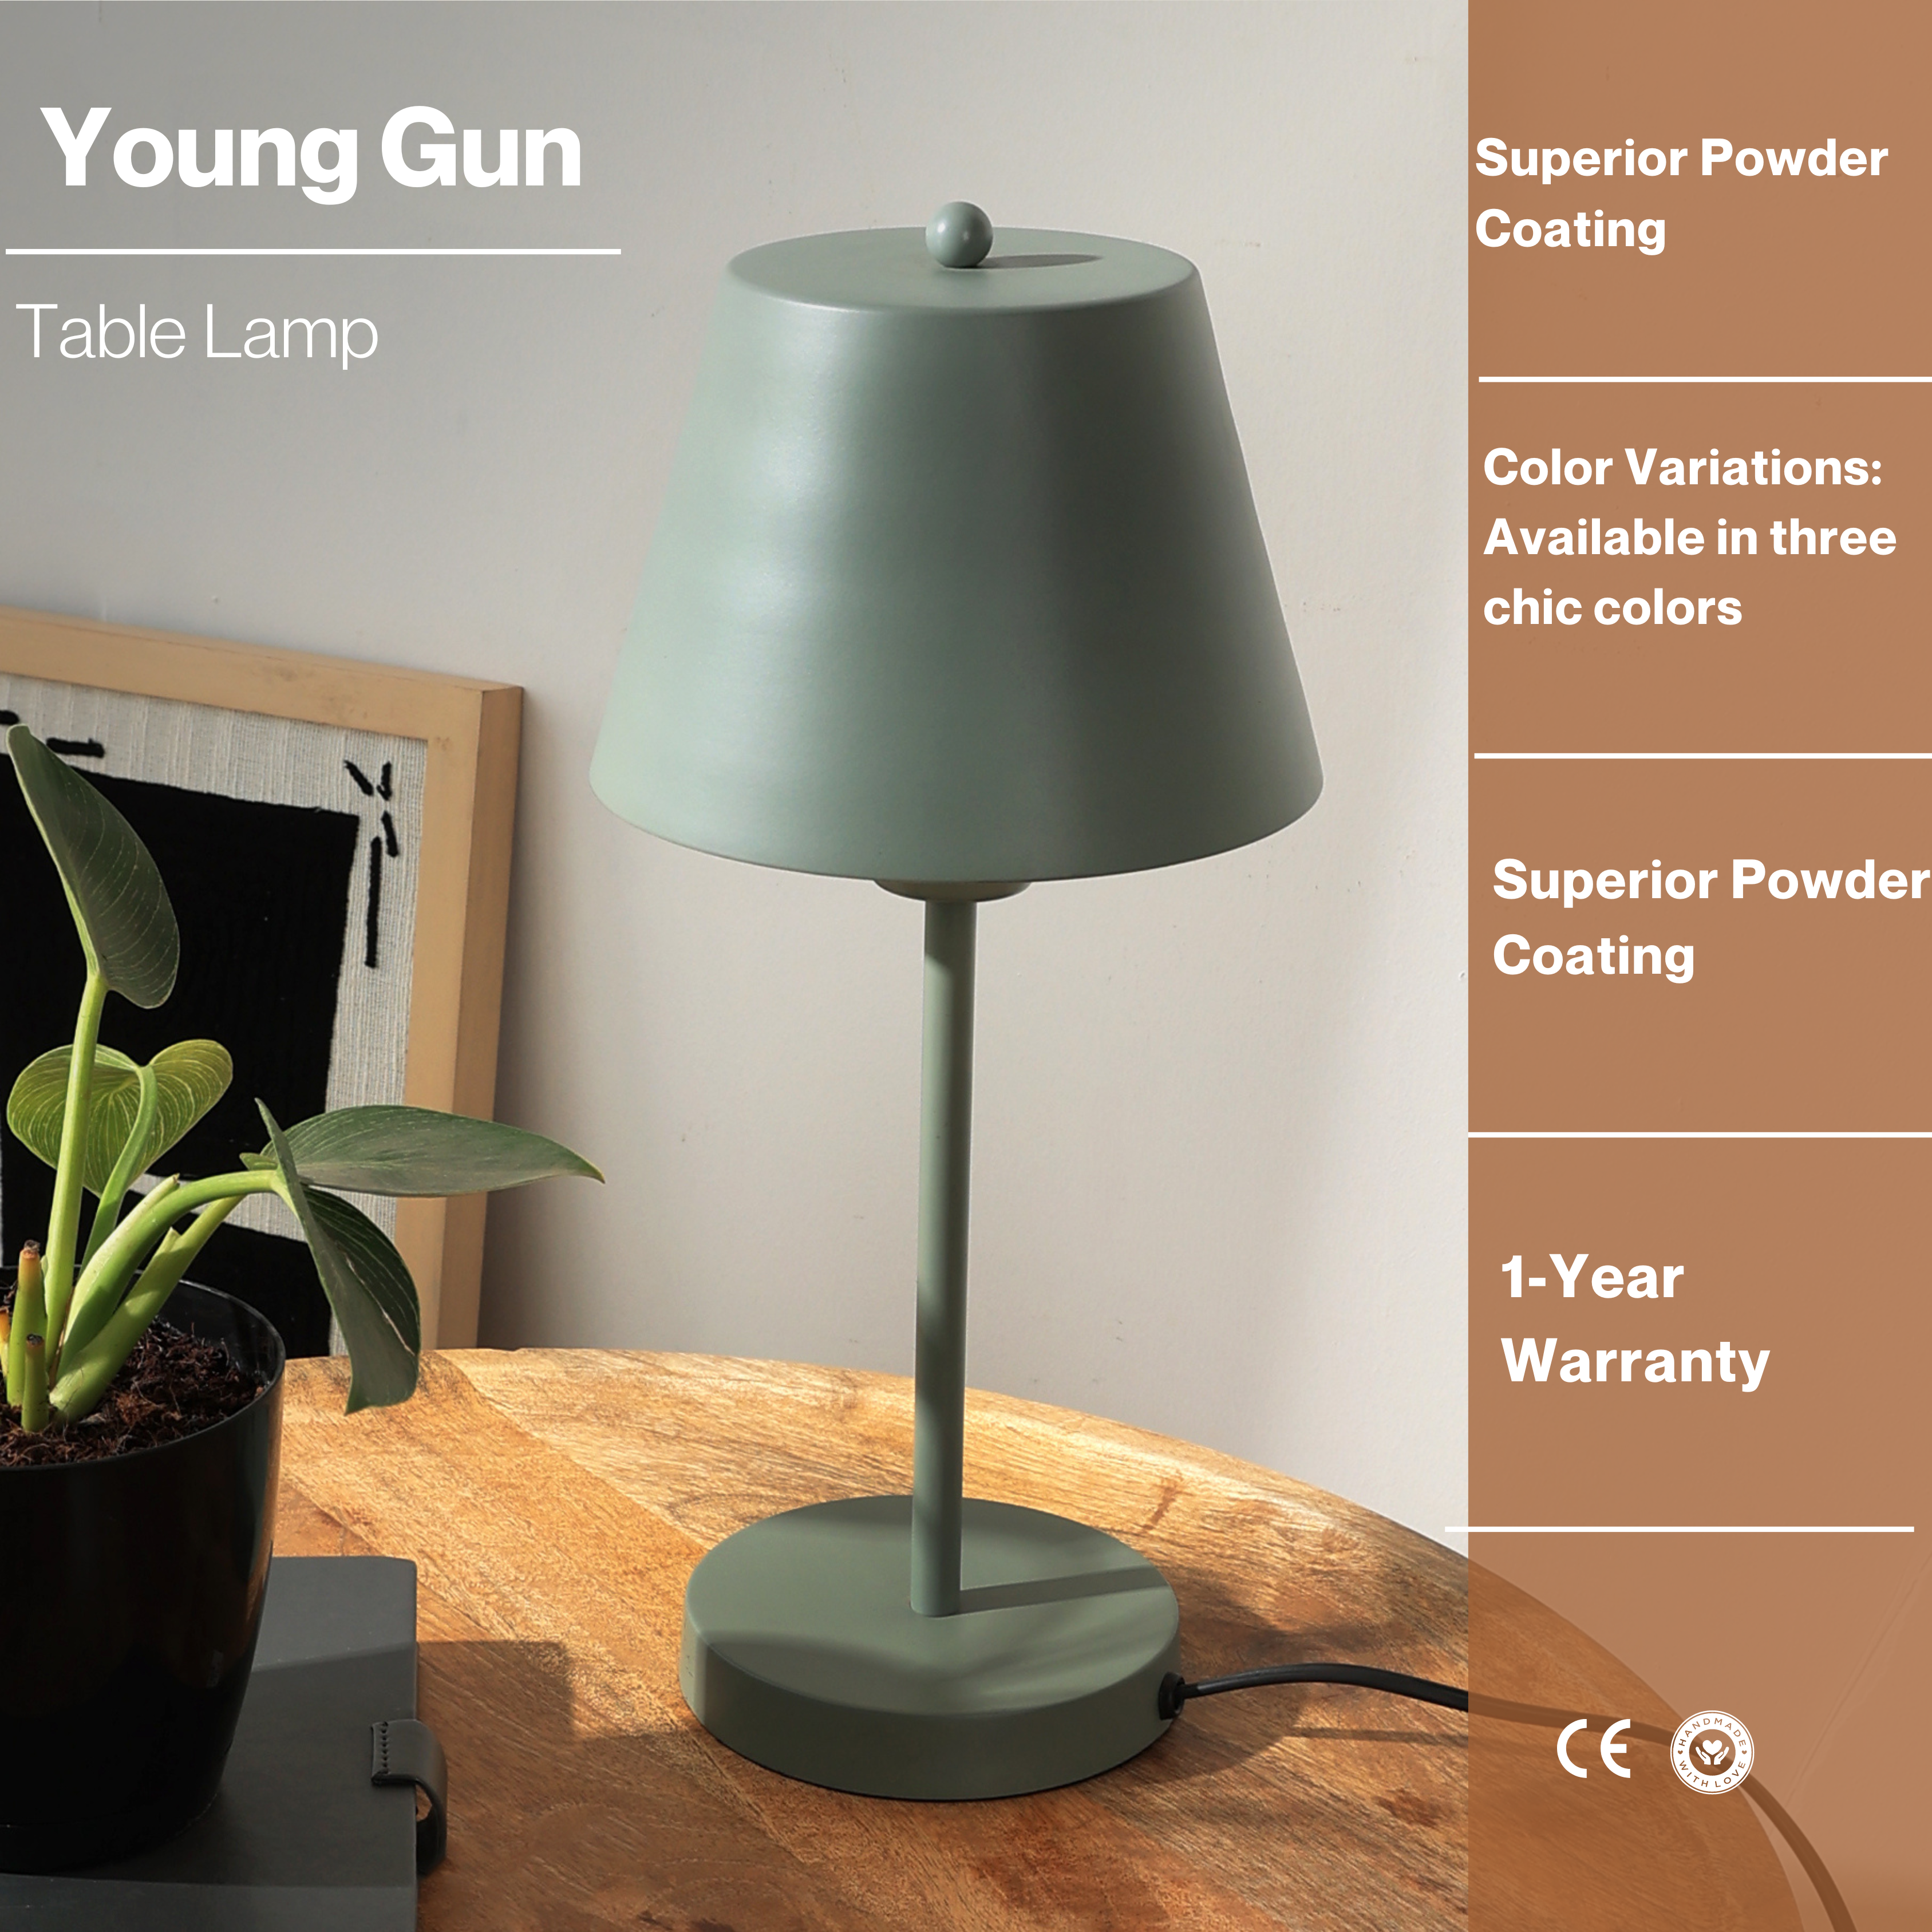 Young Gun Table Lamp